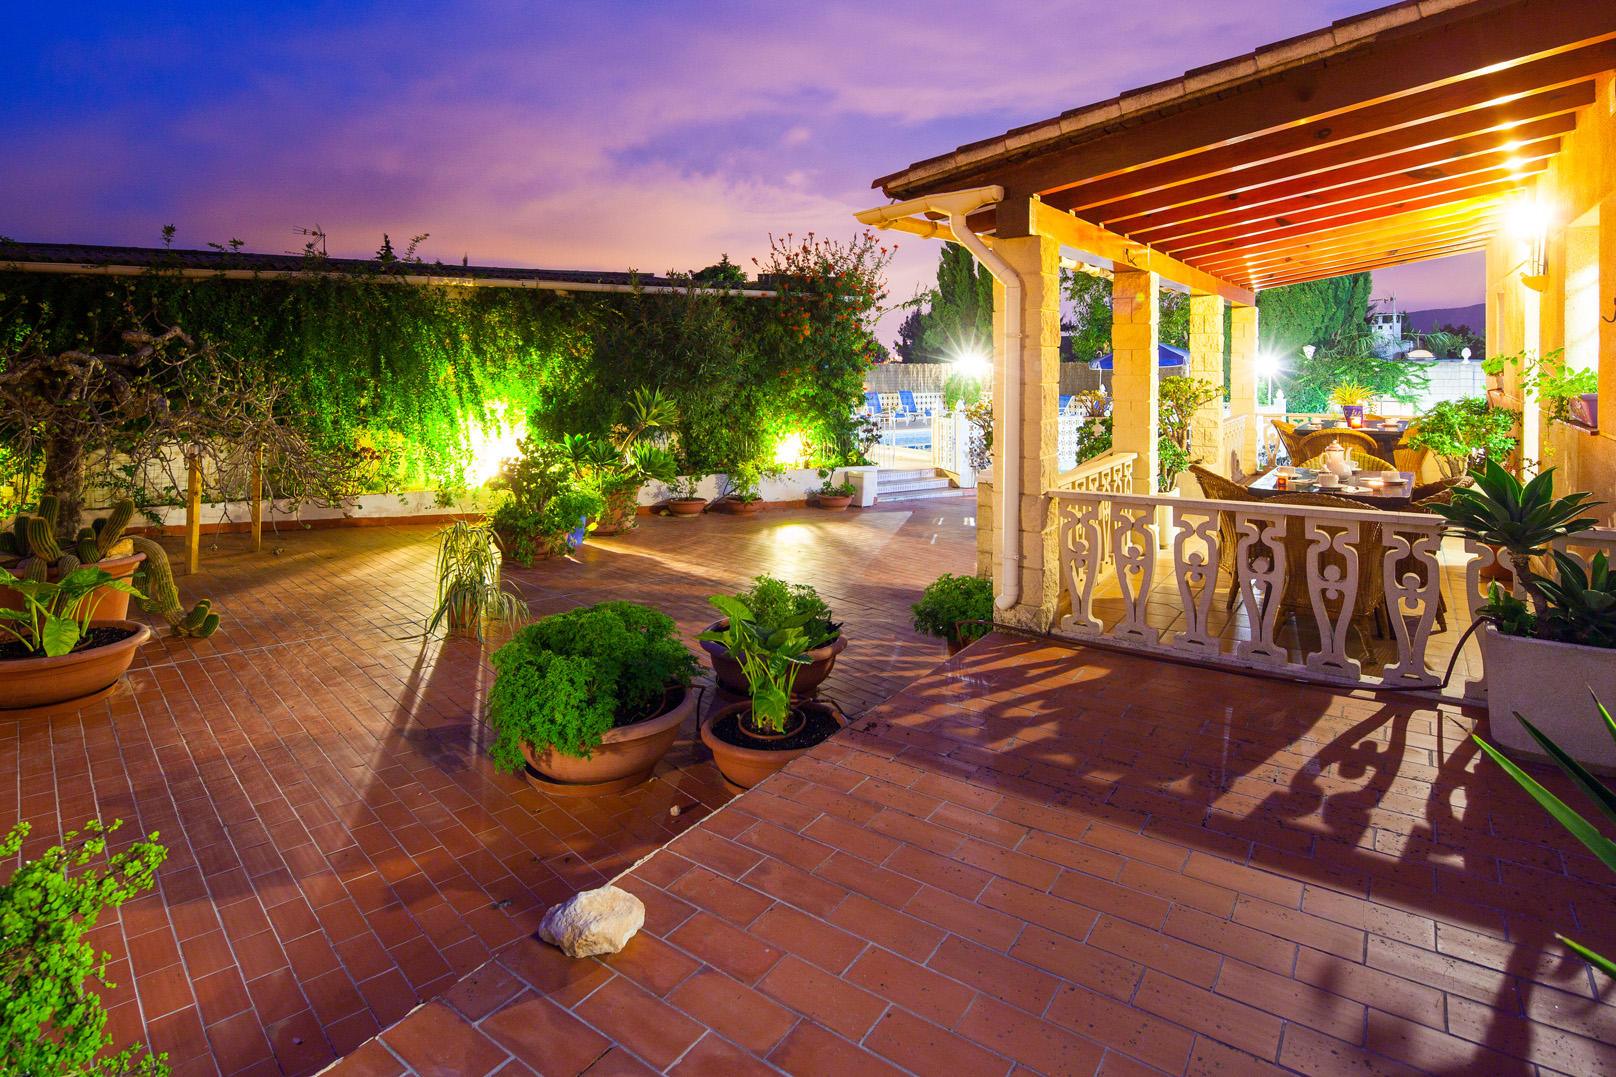 Garden zone of a rental house of Ibiza